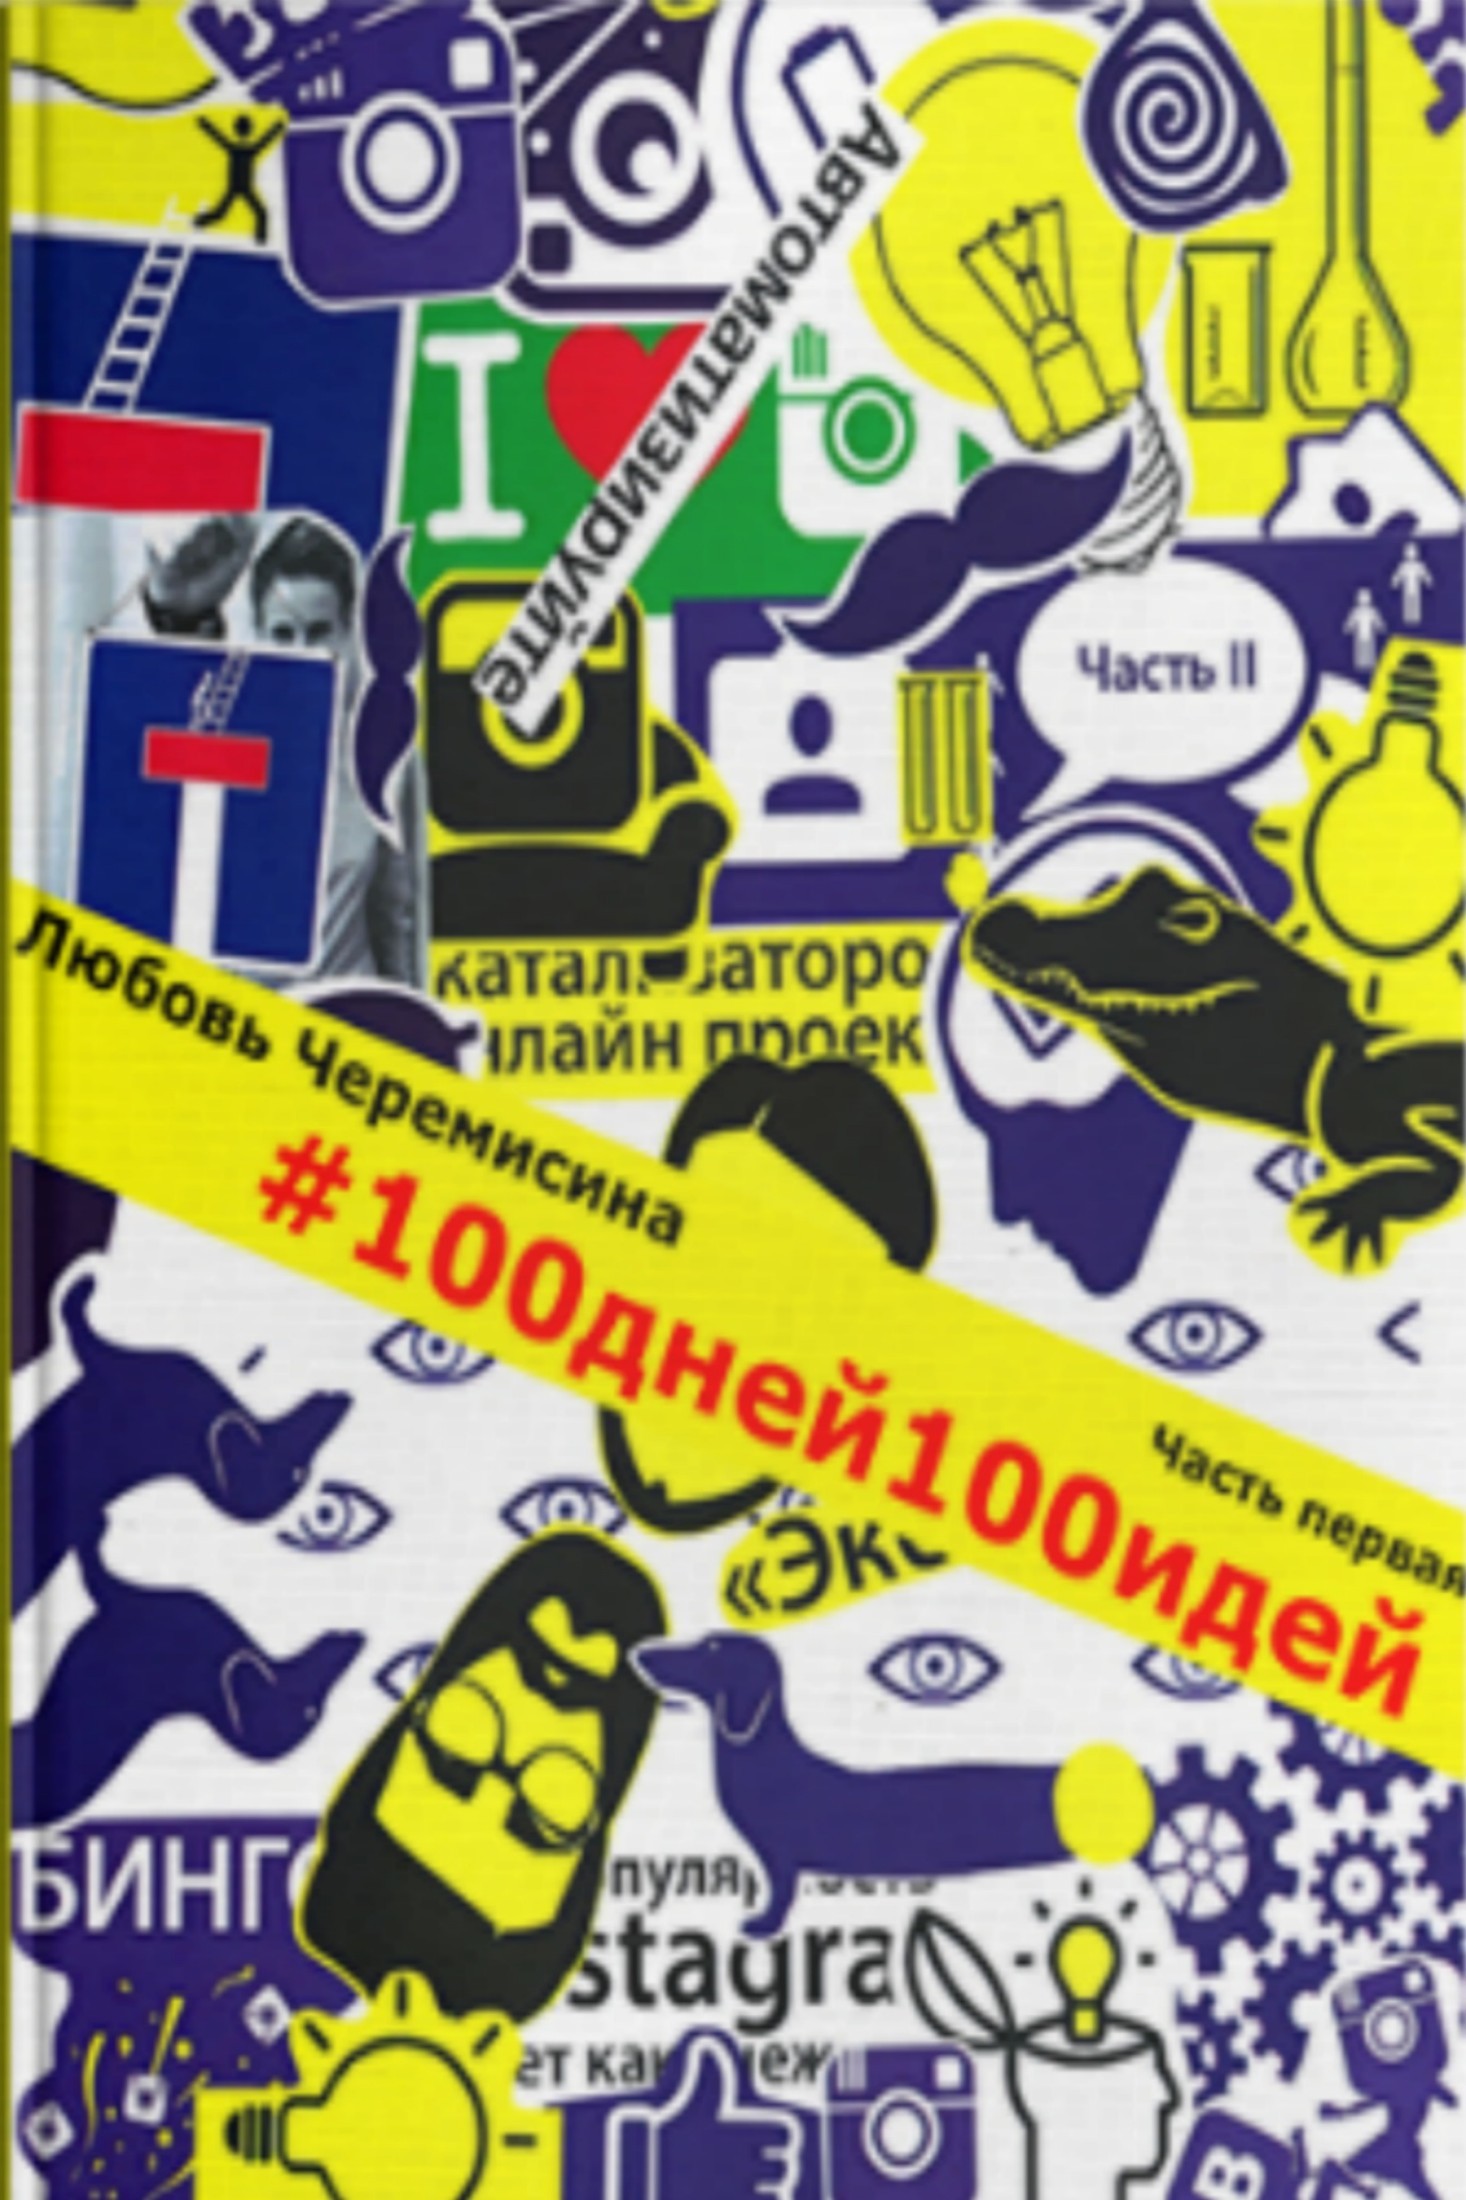 Книга 100 дней 100 идей. Часть 1 из серии , созданная Любовь Черемисина, может относится к жанру Маркетинг, PR, реклама. Стоимость электронной книги 100 дней 100 идей. Часть 1 с идентификатором 24622527 составляет 0 руб.